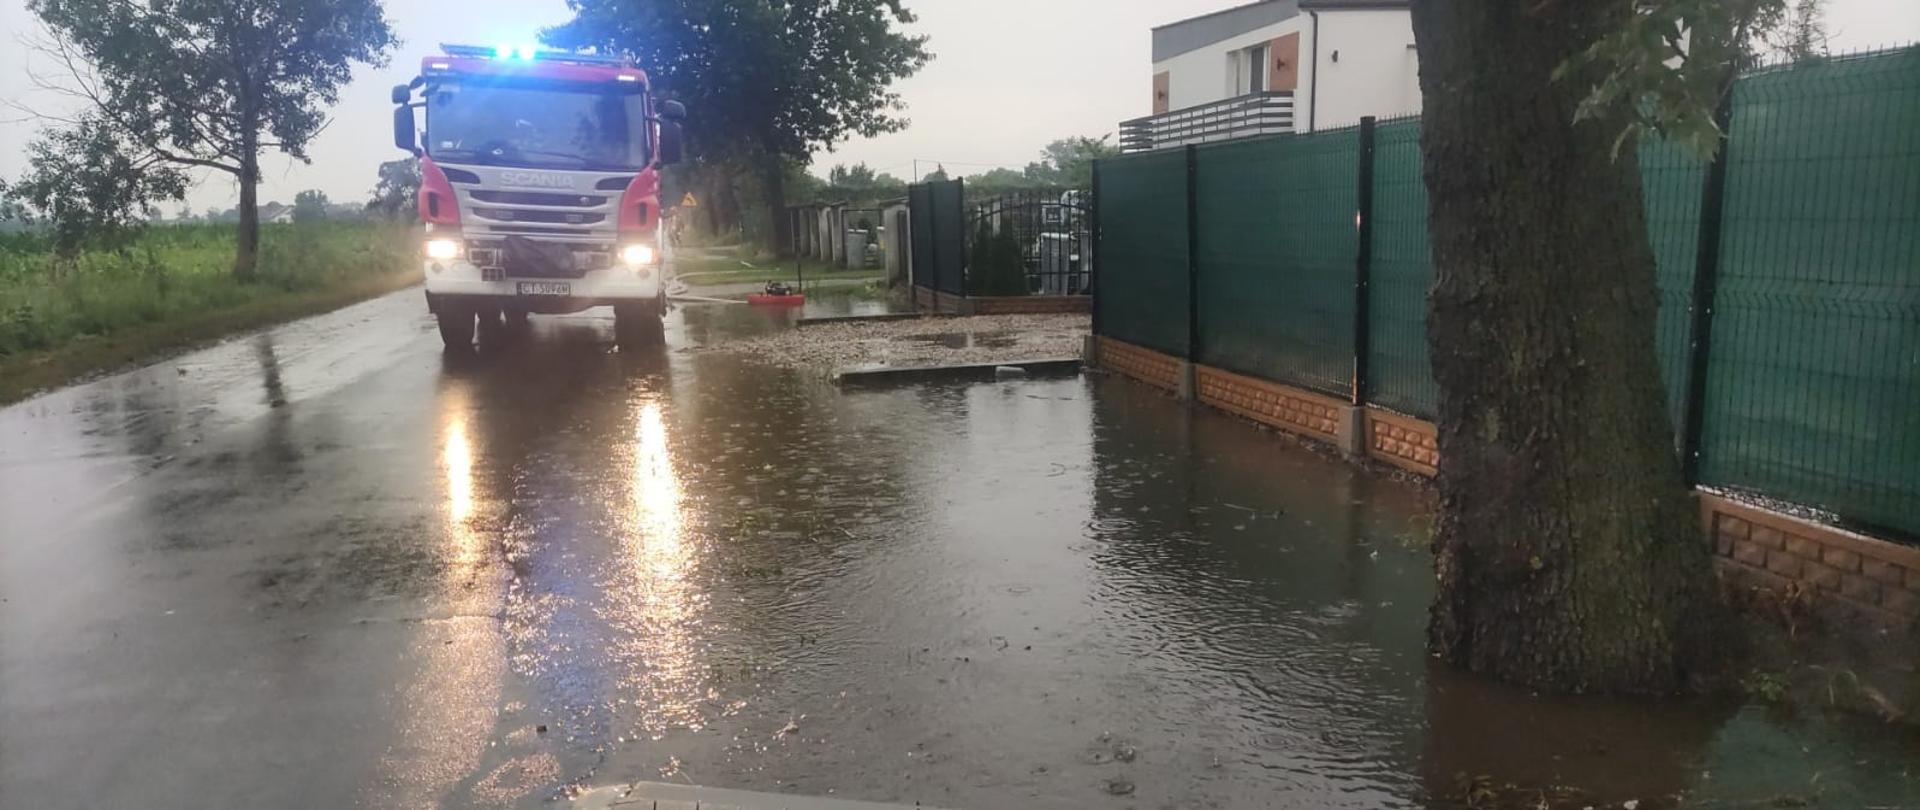 Zdjęcie przedstawia jezdnie drogi powiatowej na której znajduje się pojazd ratowniczo-gaśniczy Państwowej Straży Pożarnej z Radziejowa w trakcie zdarzenia zalanej posesji oraz jedni drogi powiatowej.